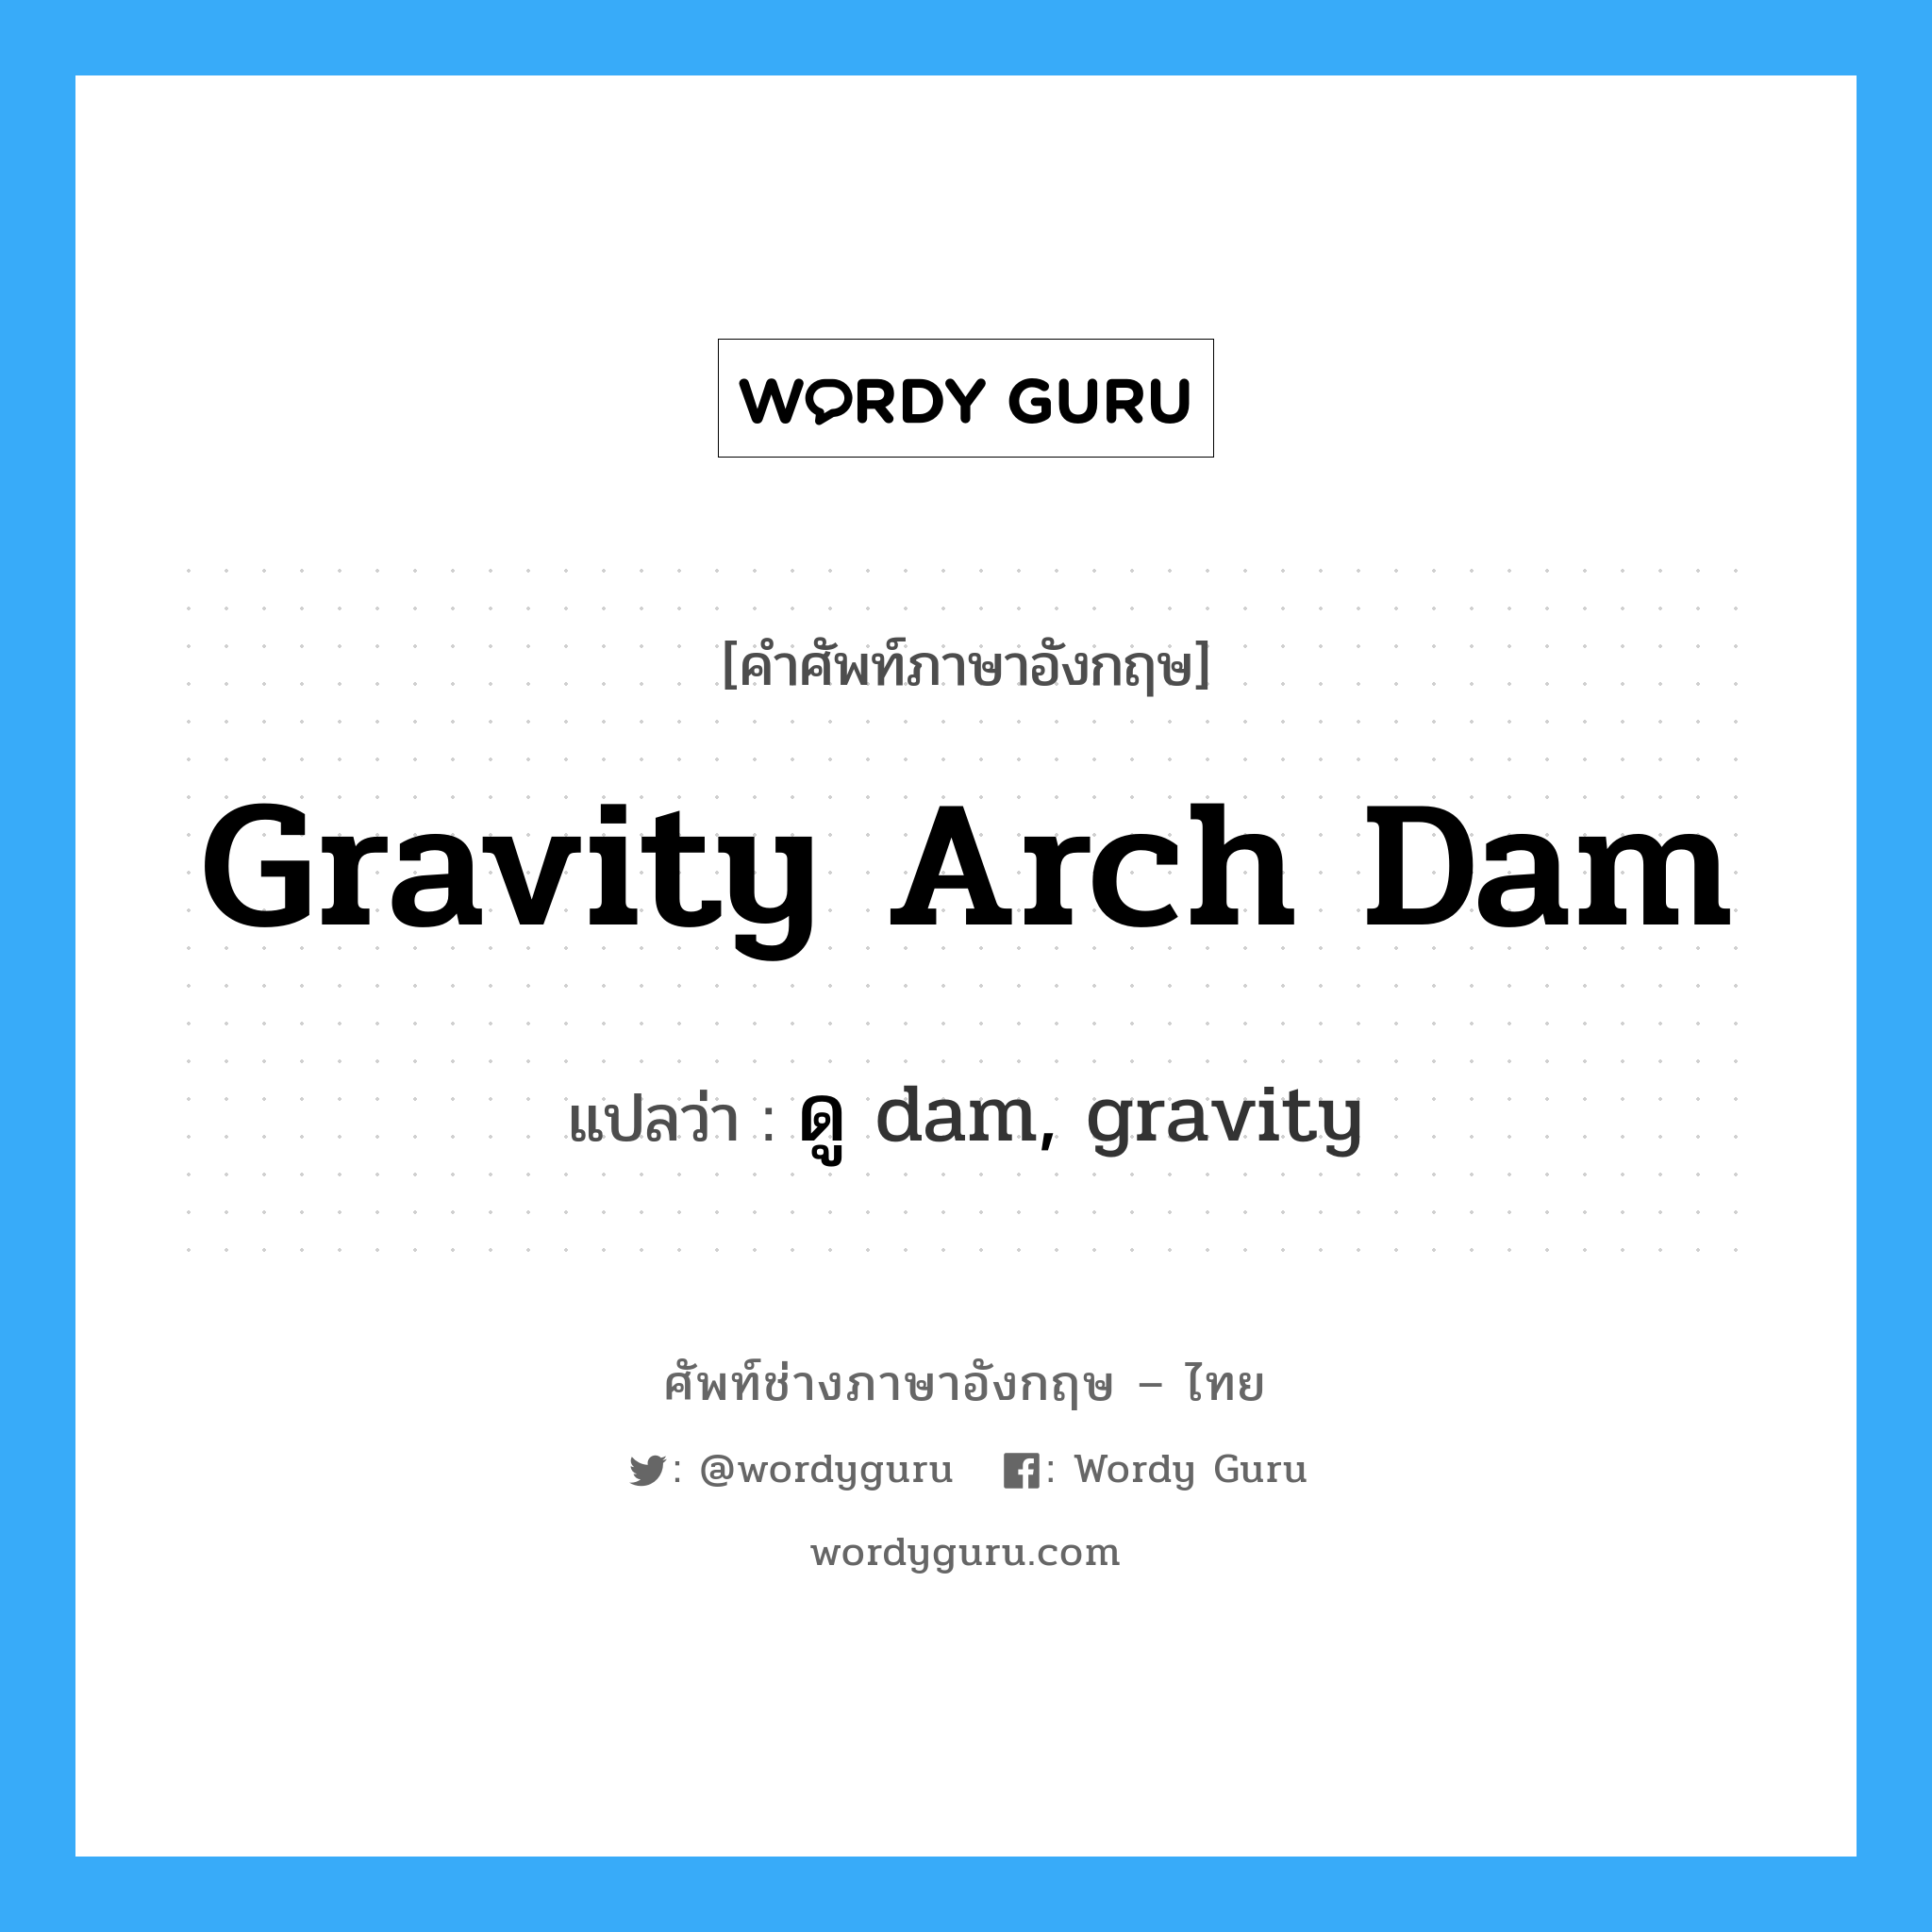 ดู dam, gravity ภาษาอังกฤษ?, คำศัพท์ช่างภาษาอังกฤษ - ไทย ดู dam, gravity คำศัพท์ภาษาอังกฤษ ดู dam, gravity แปลว่า gravity arch dam